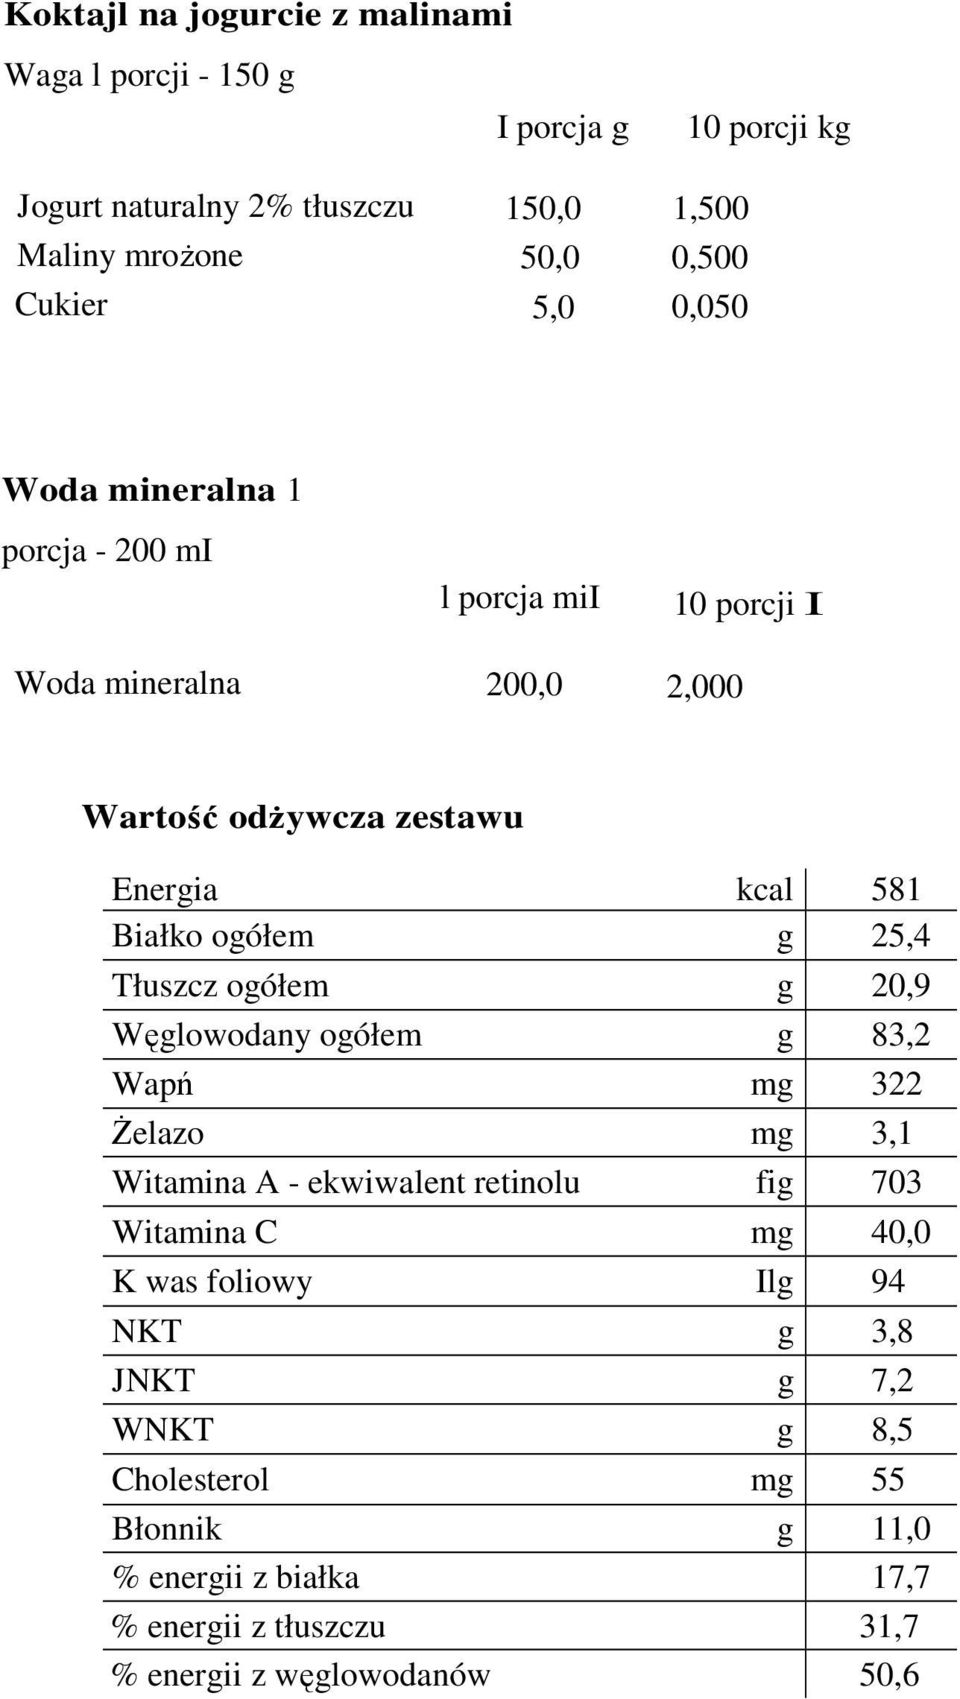 g 25,4 Tłuszcz ogółem g 20,9 Węglowodany ogółem g 83,2 Wapń mg 322 Żelazo mg 3,1 Witamina A - ekwiwalent retinolu fig 703 Witamina C mg 40,0 K was